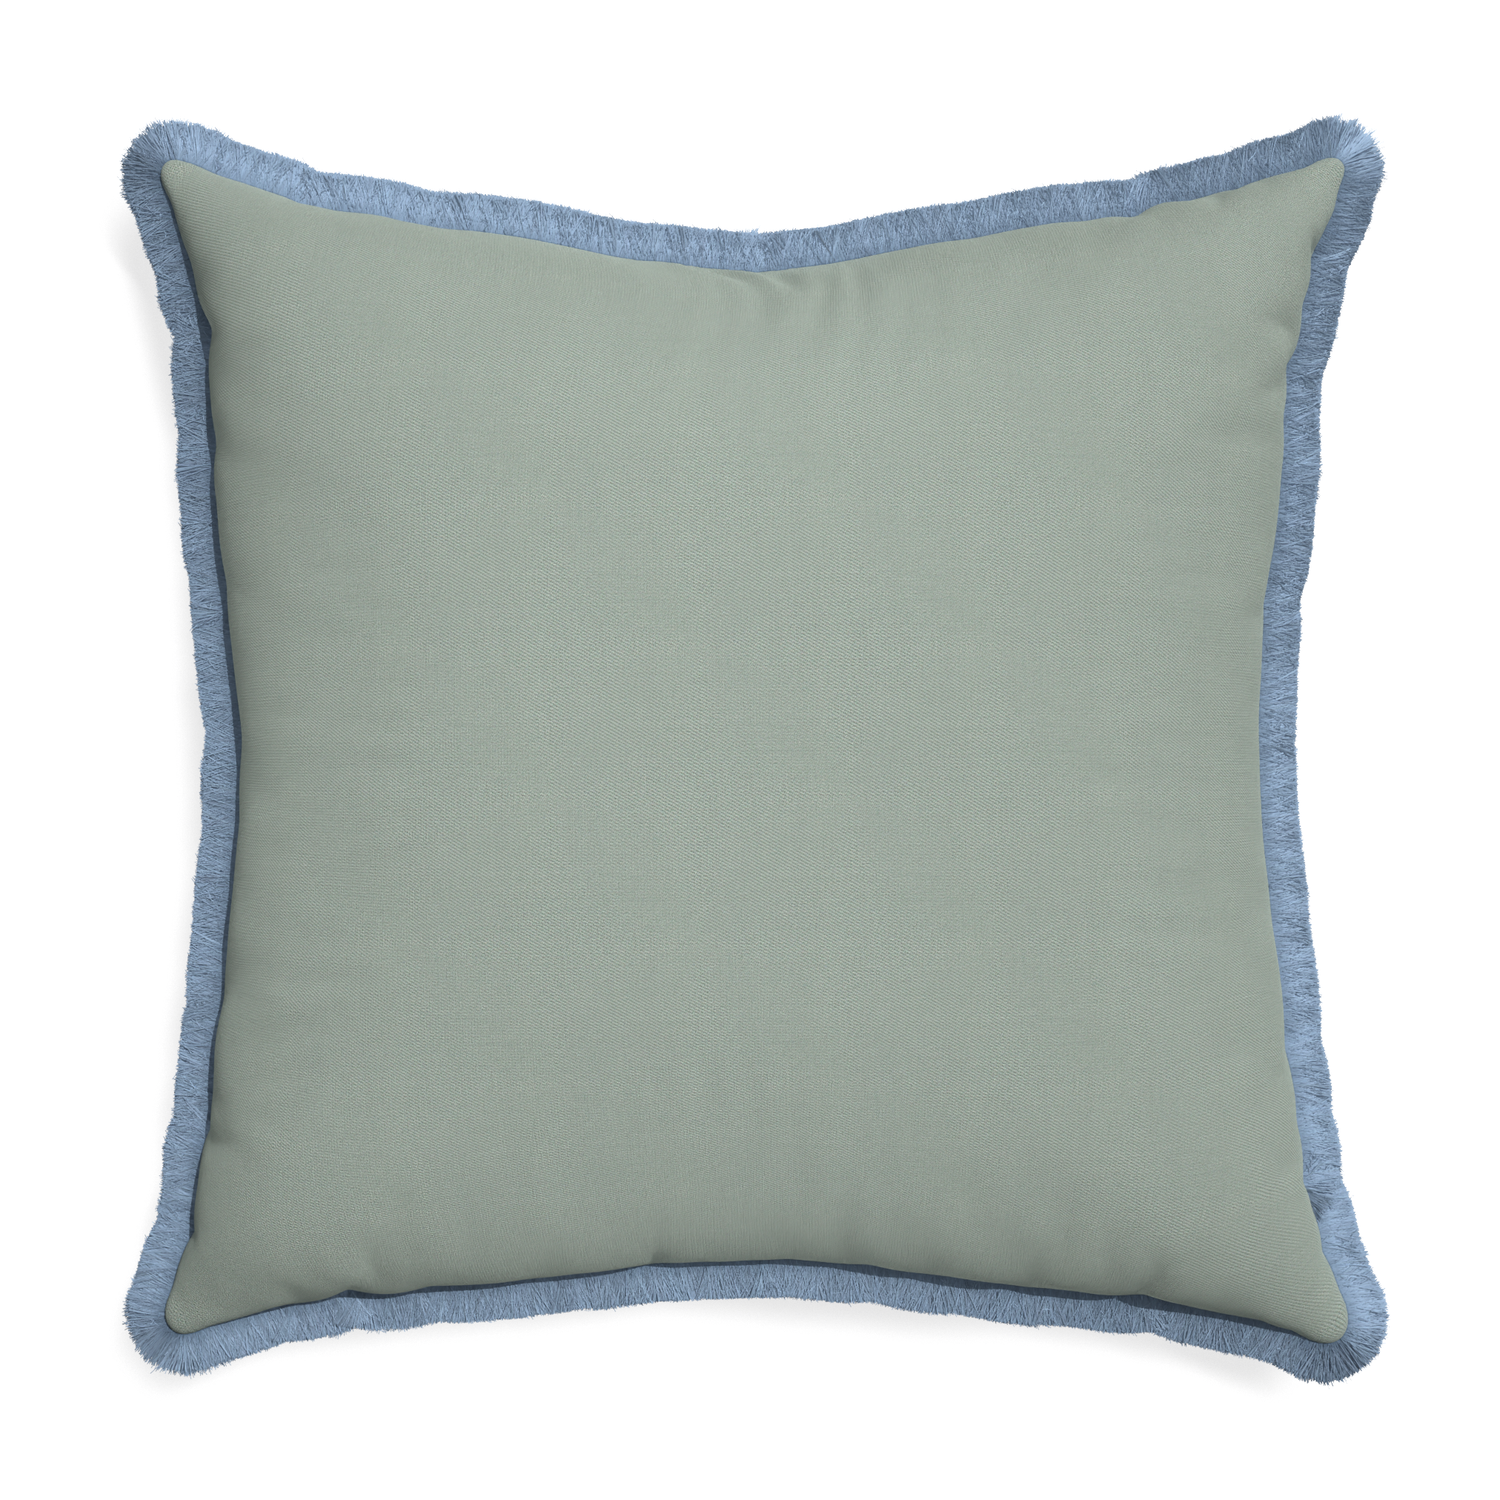 Euro-sham sage custom pillow with sky fringe on white background